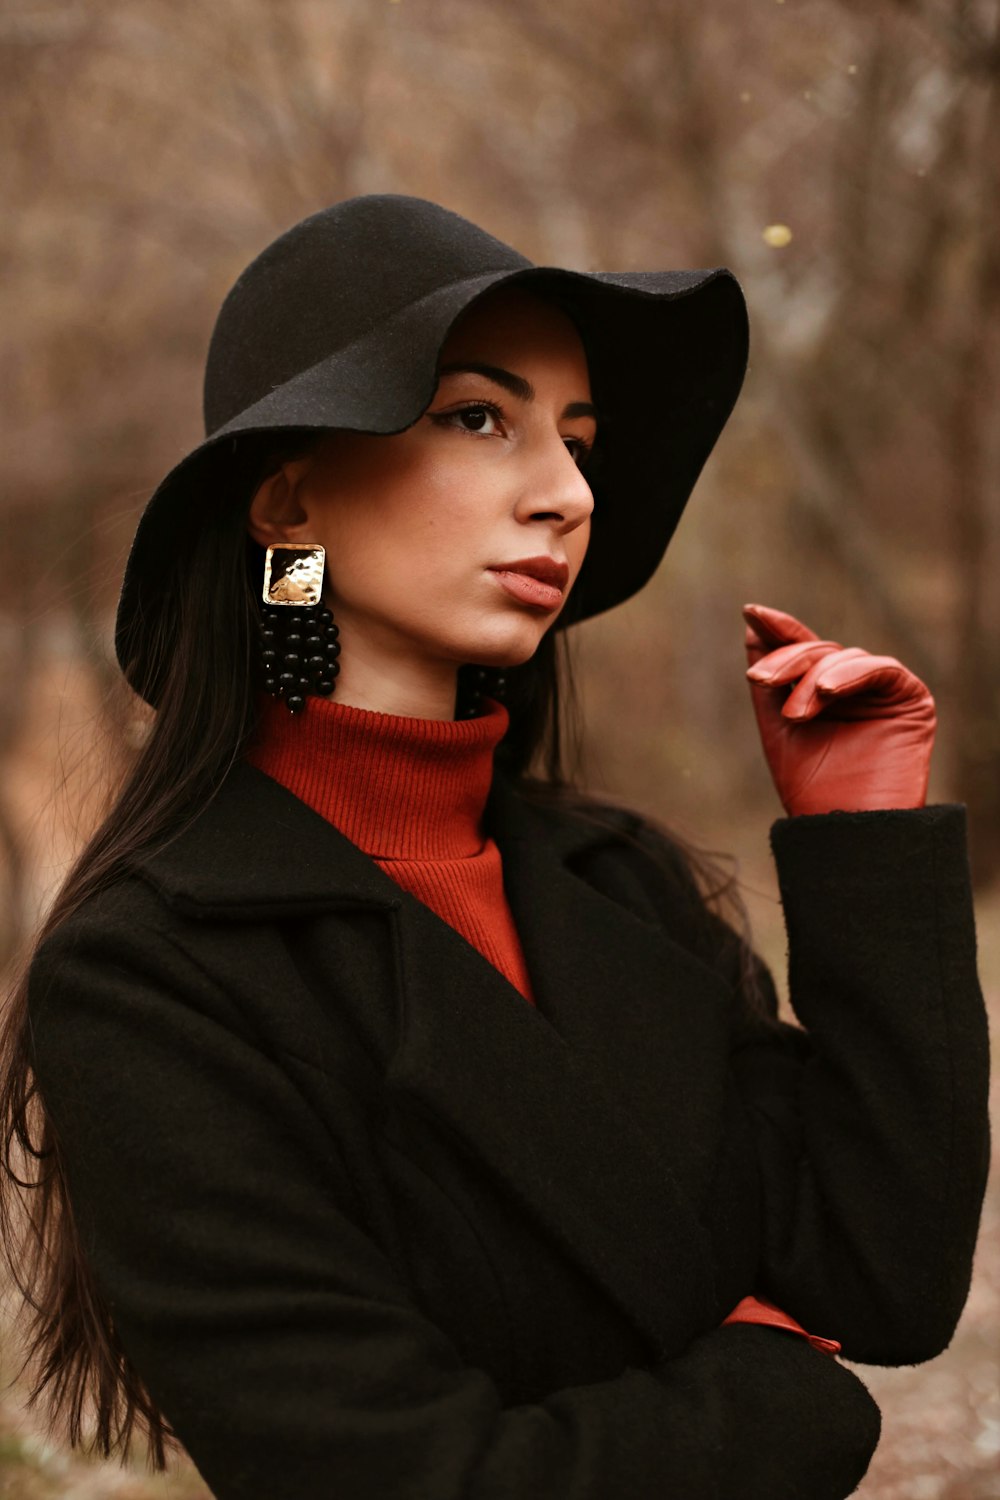 Frau in schwarzem Hut und schwarzem Mantel